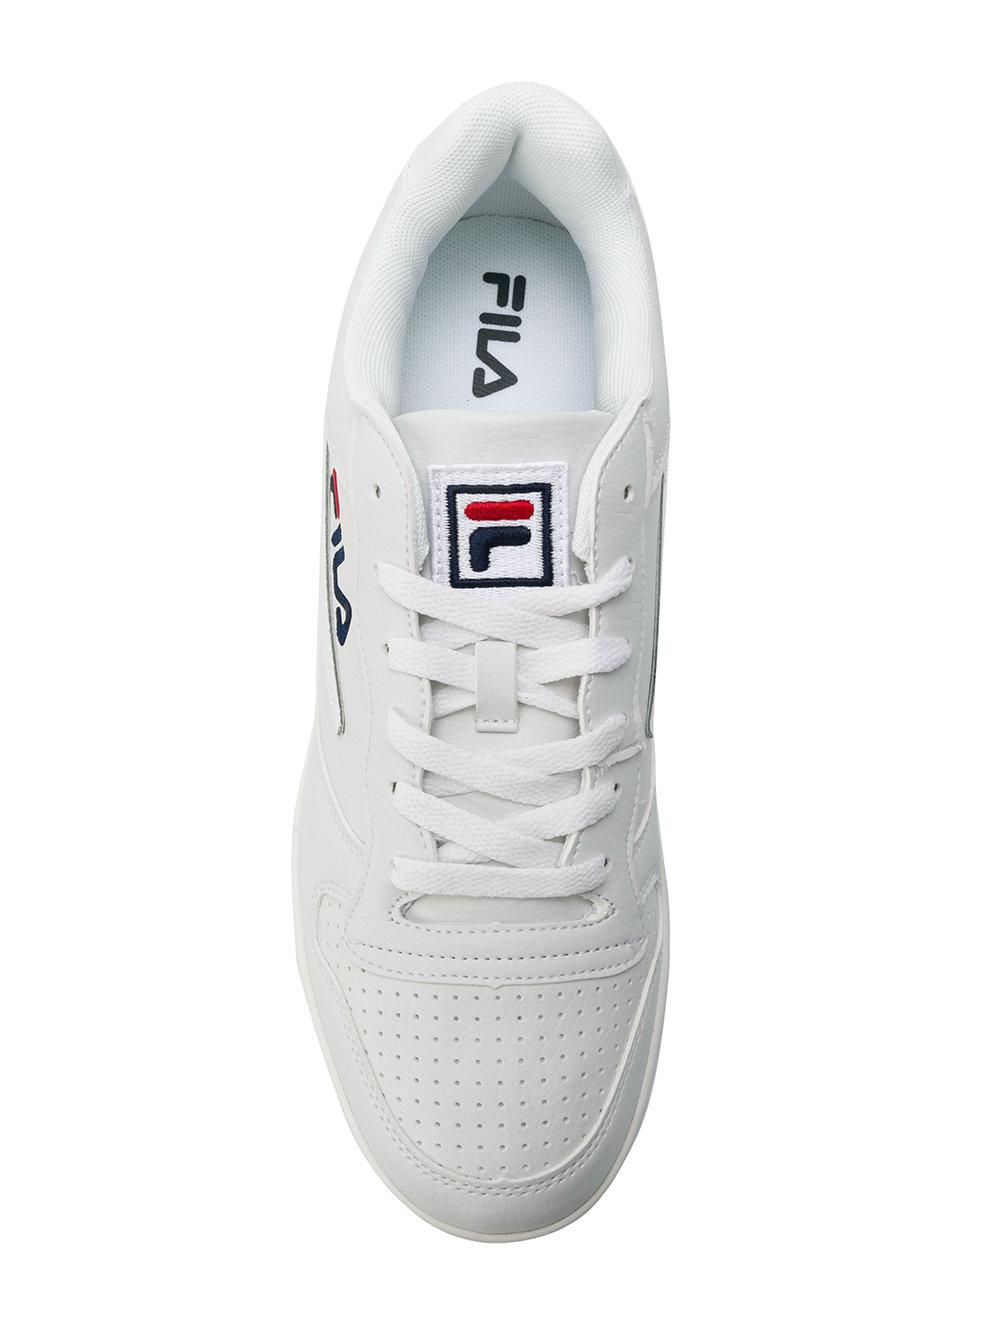 Lyst - Fila Baskets Fx100 Low Sneakers in White for Men